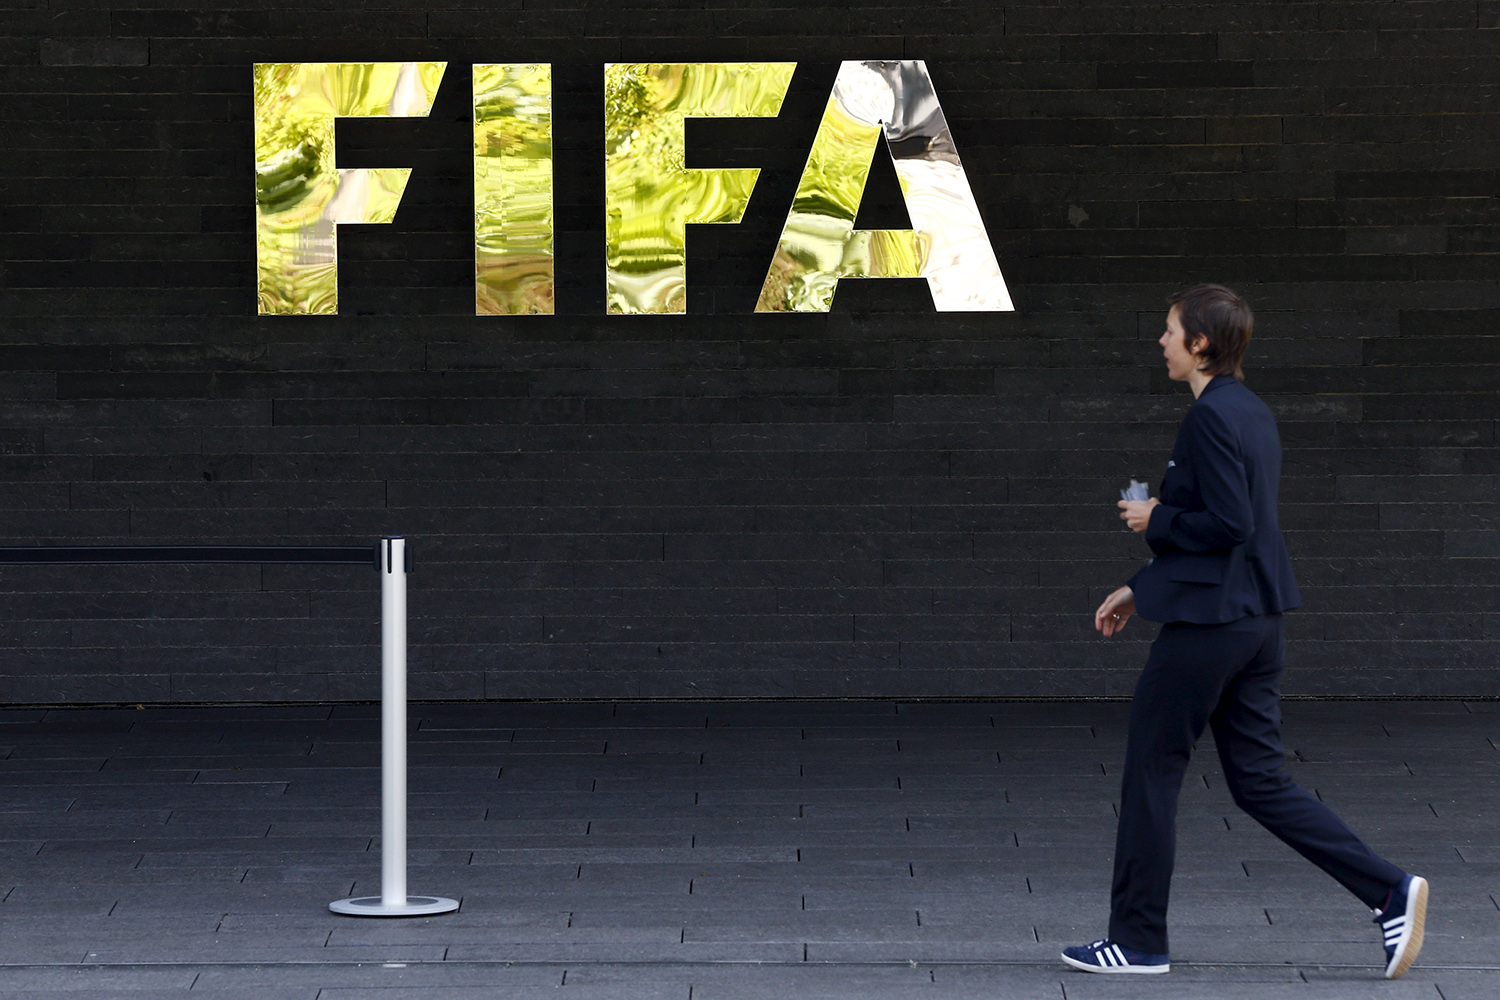 La FIFA aplaza el proceso de candidaturas para el Mundial 2026